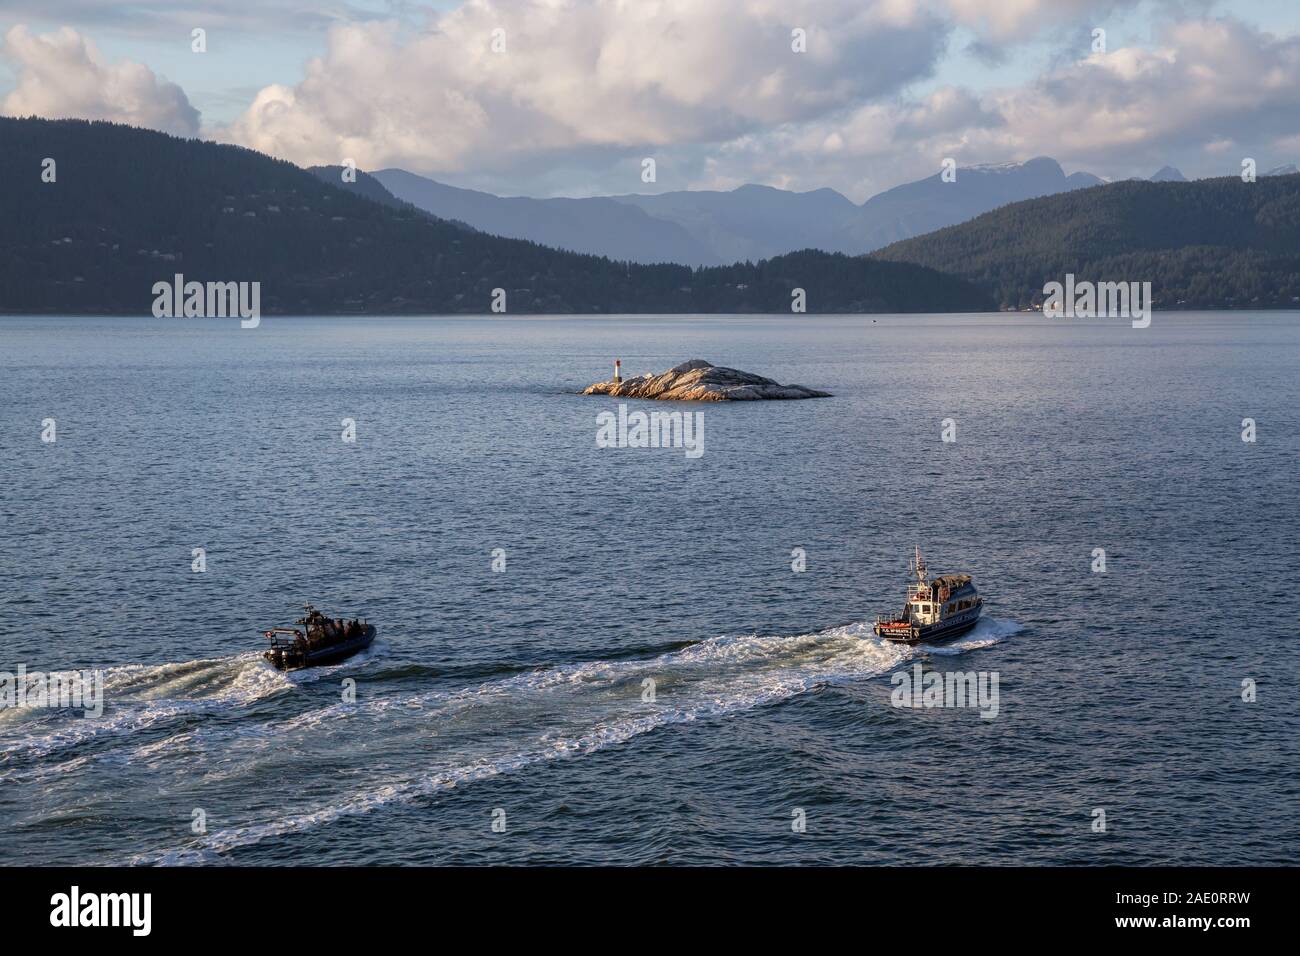 West Vancouver, Colombie-Britannique, Canada - le 24 novembre 2019 - Service de police de Vancouver sur les bateaux voyagent dans la baie Howe pendant le coucher du soleil. Banque D'Images